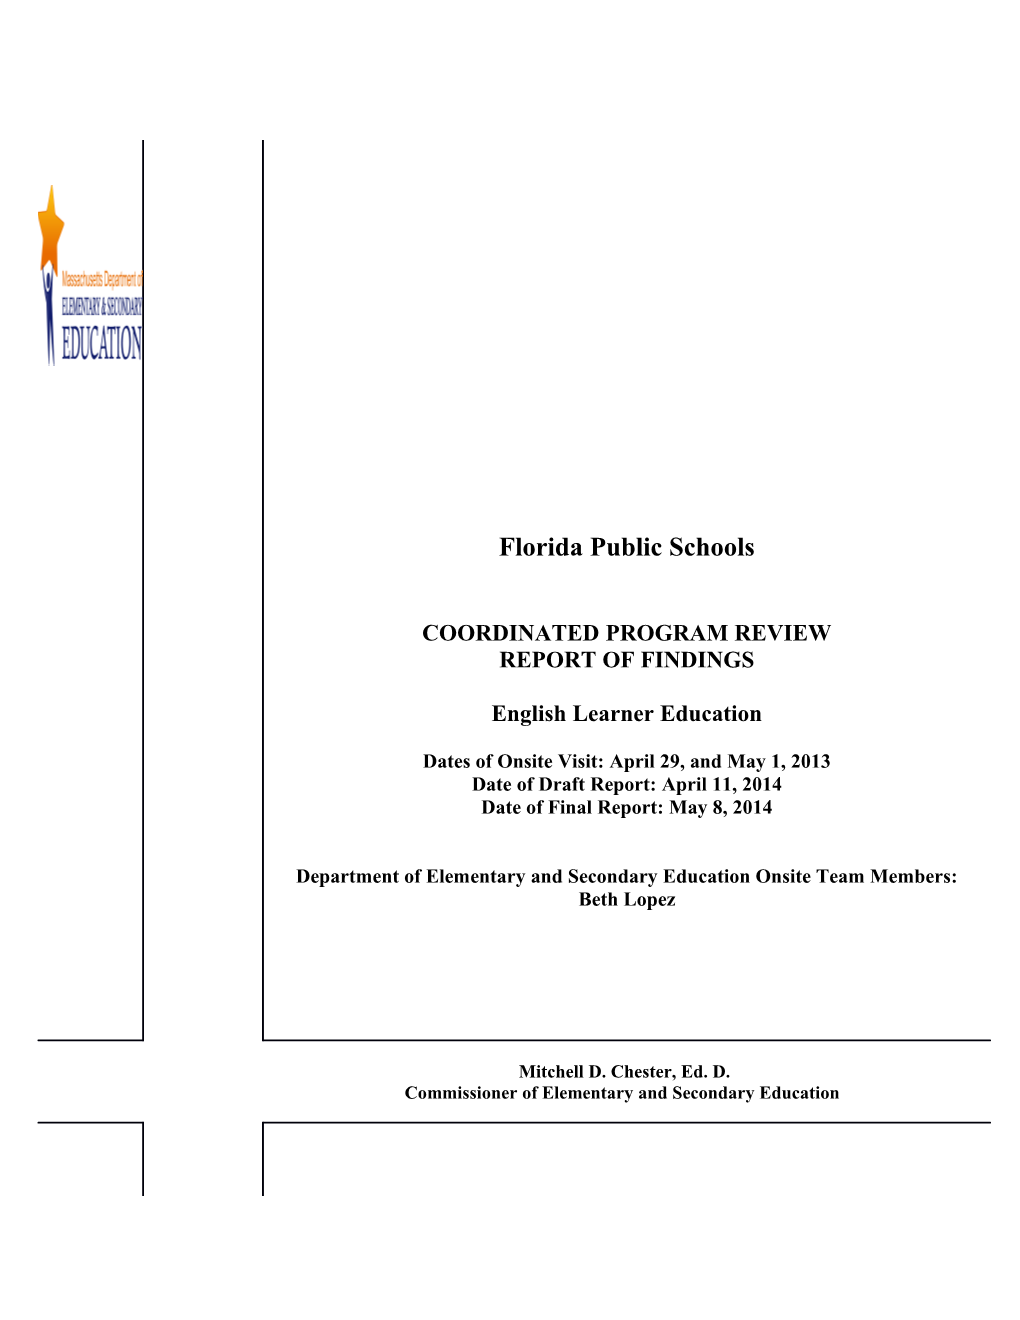 Florida Public Schools CPR Final Report 2012-2013